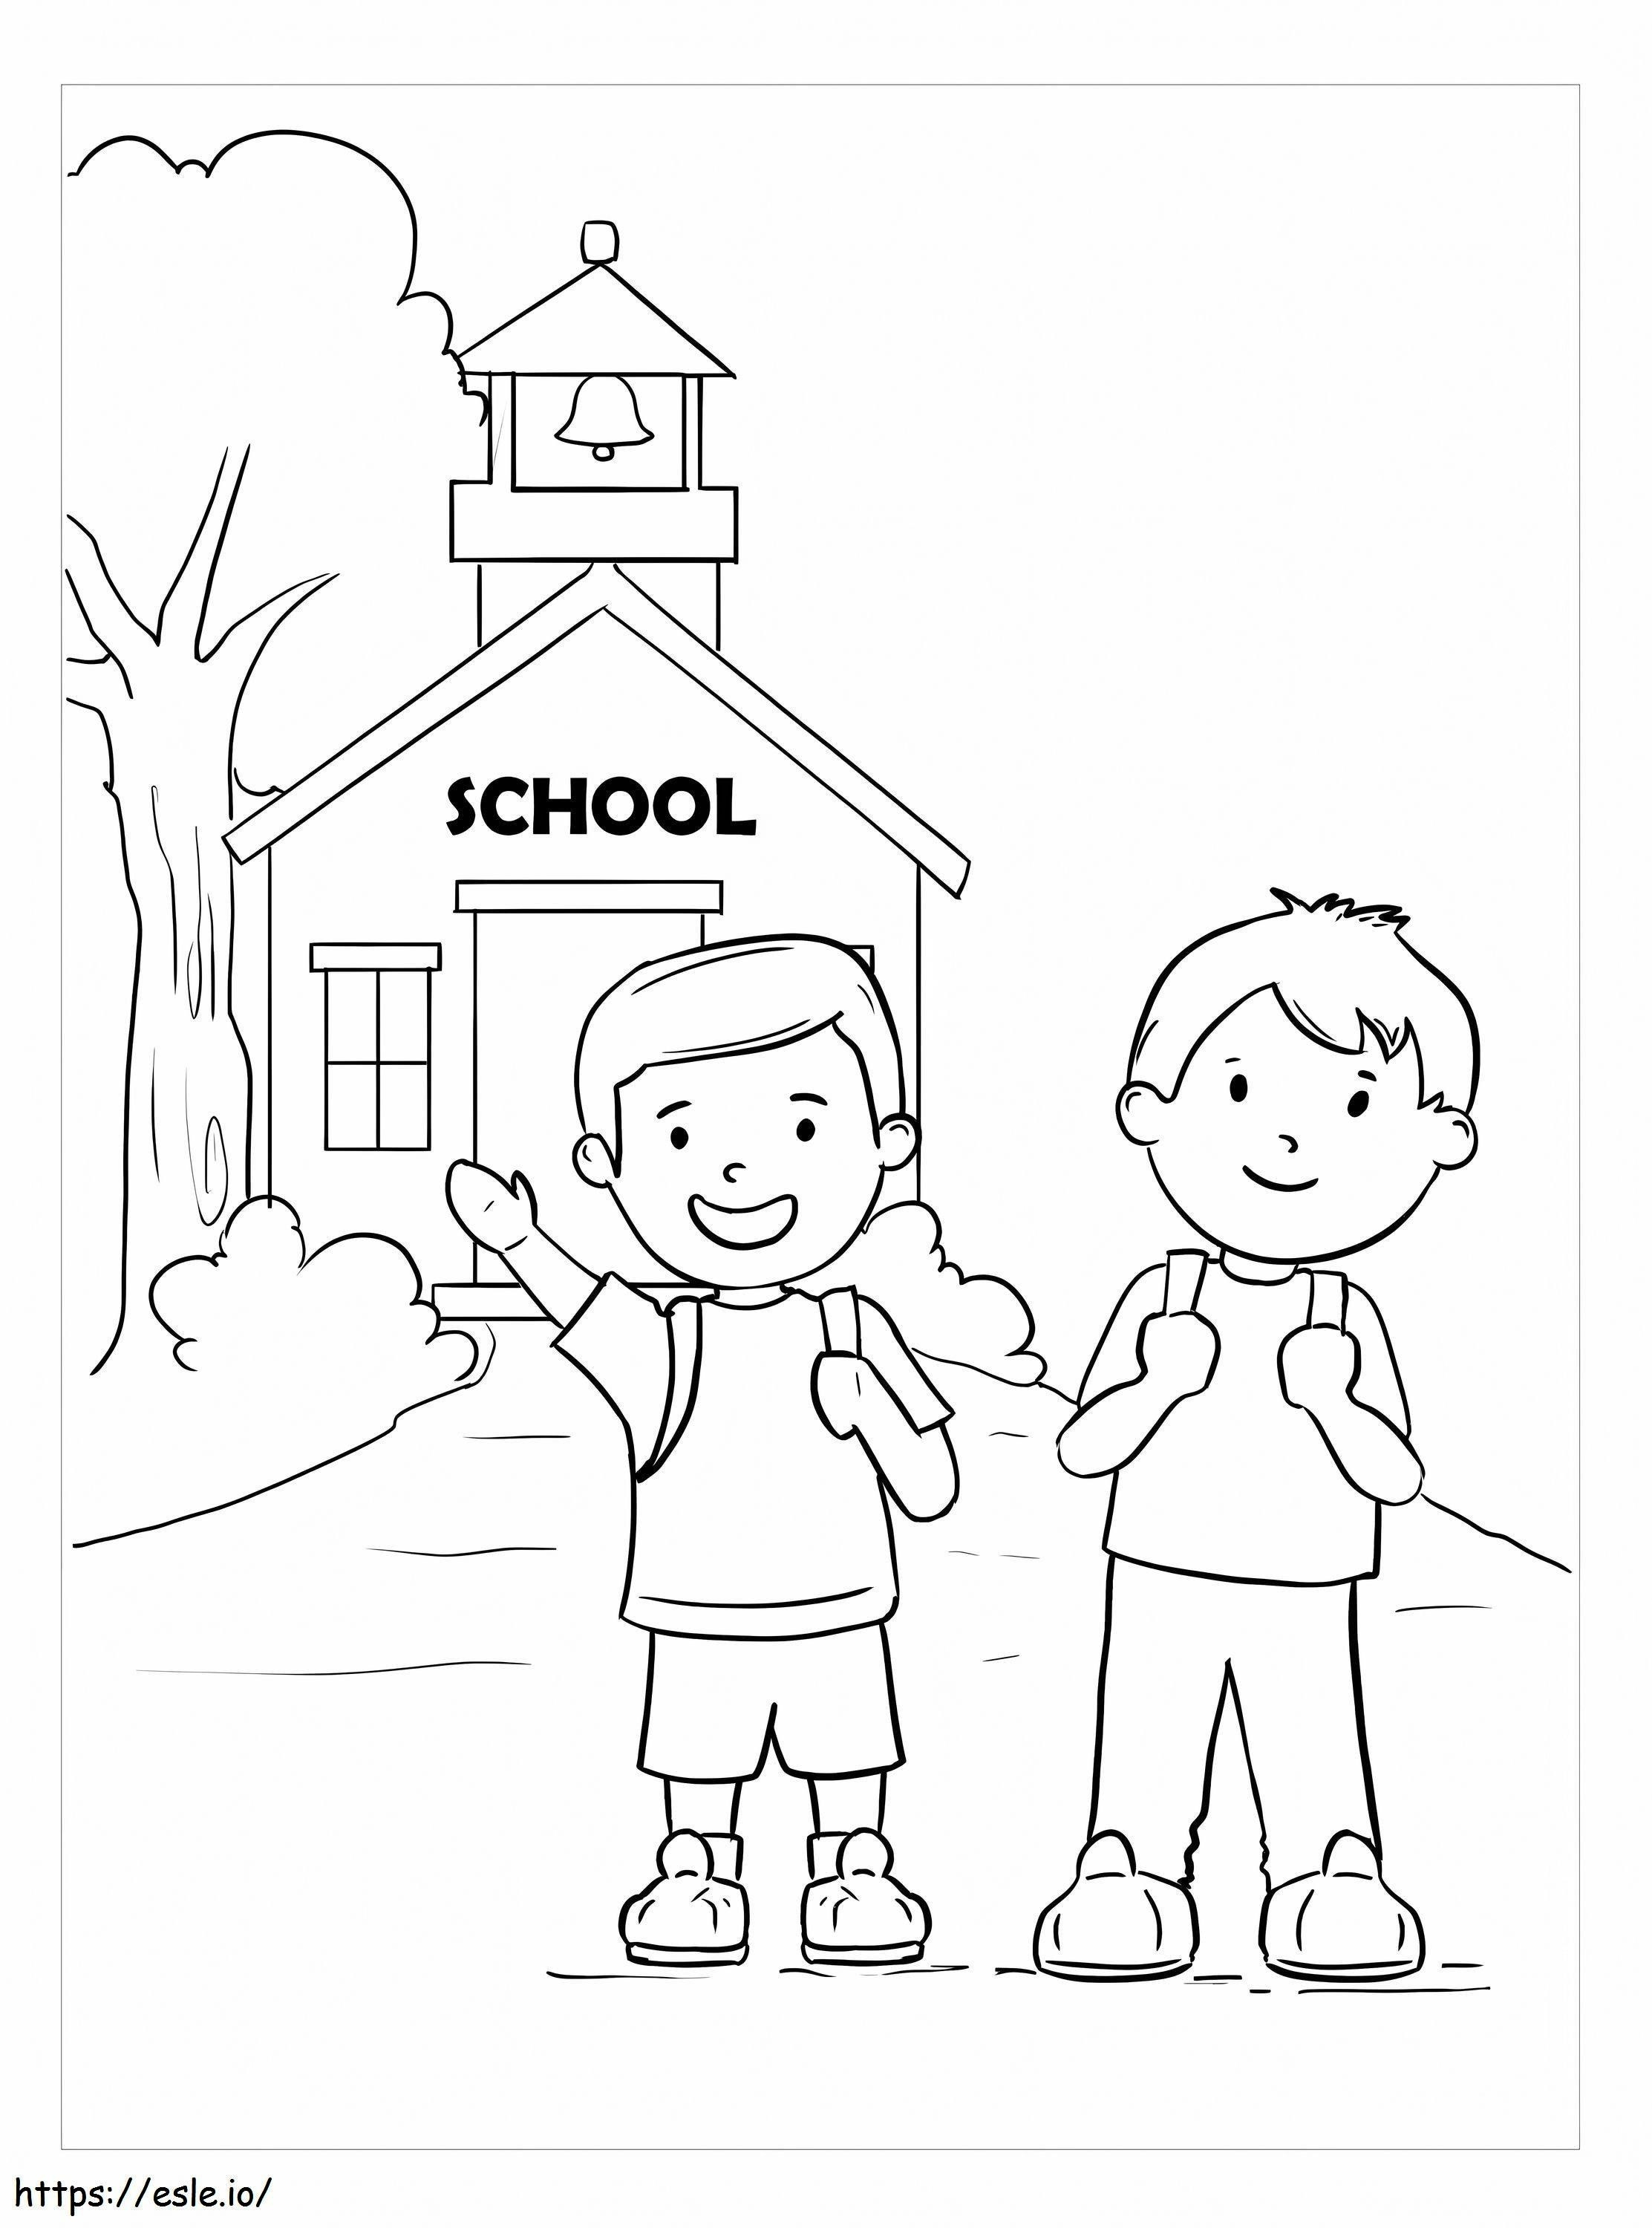 Zwei Jungen gehen zur Schule ausmalbilder